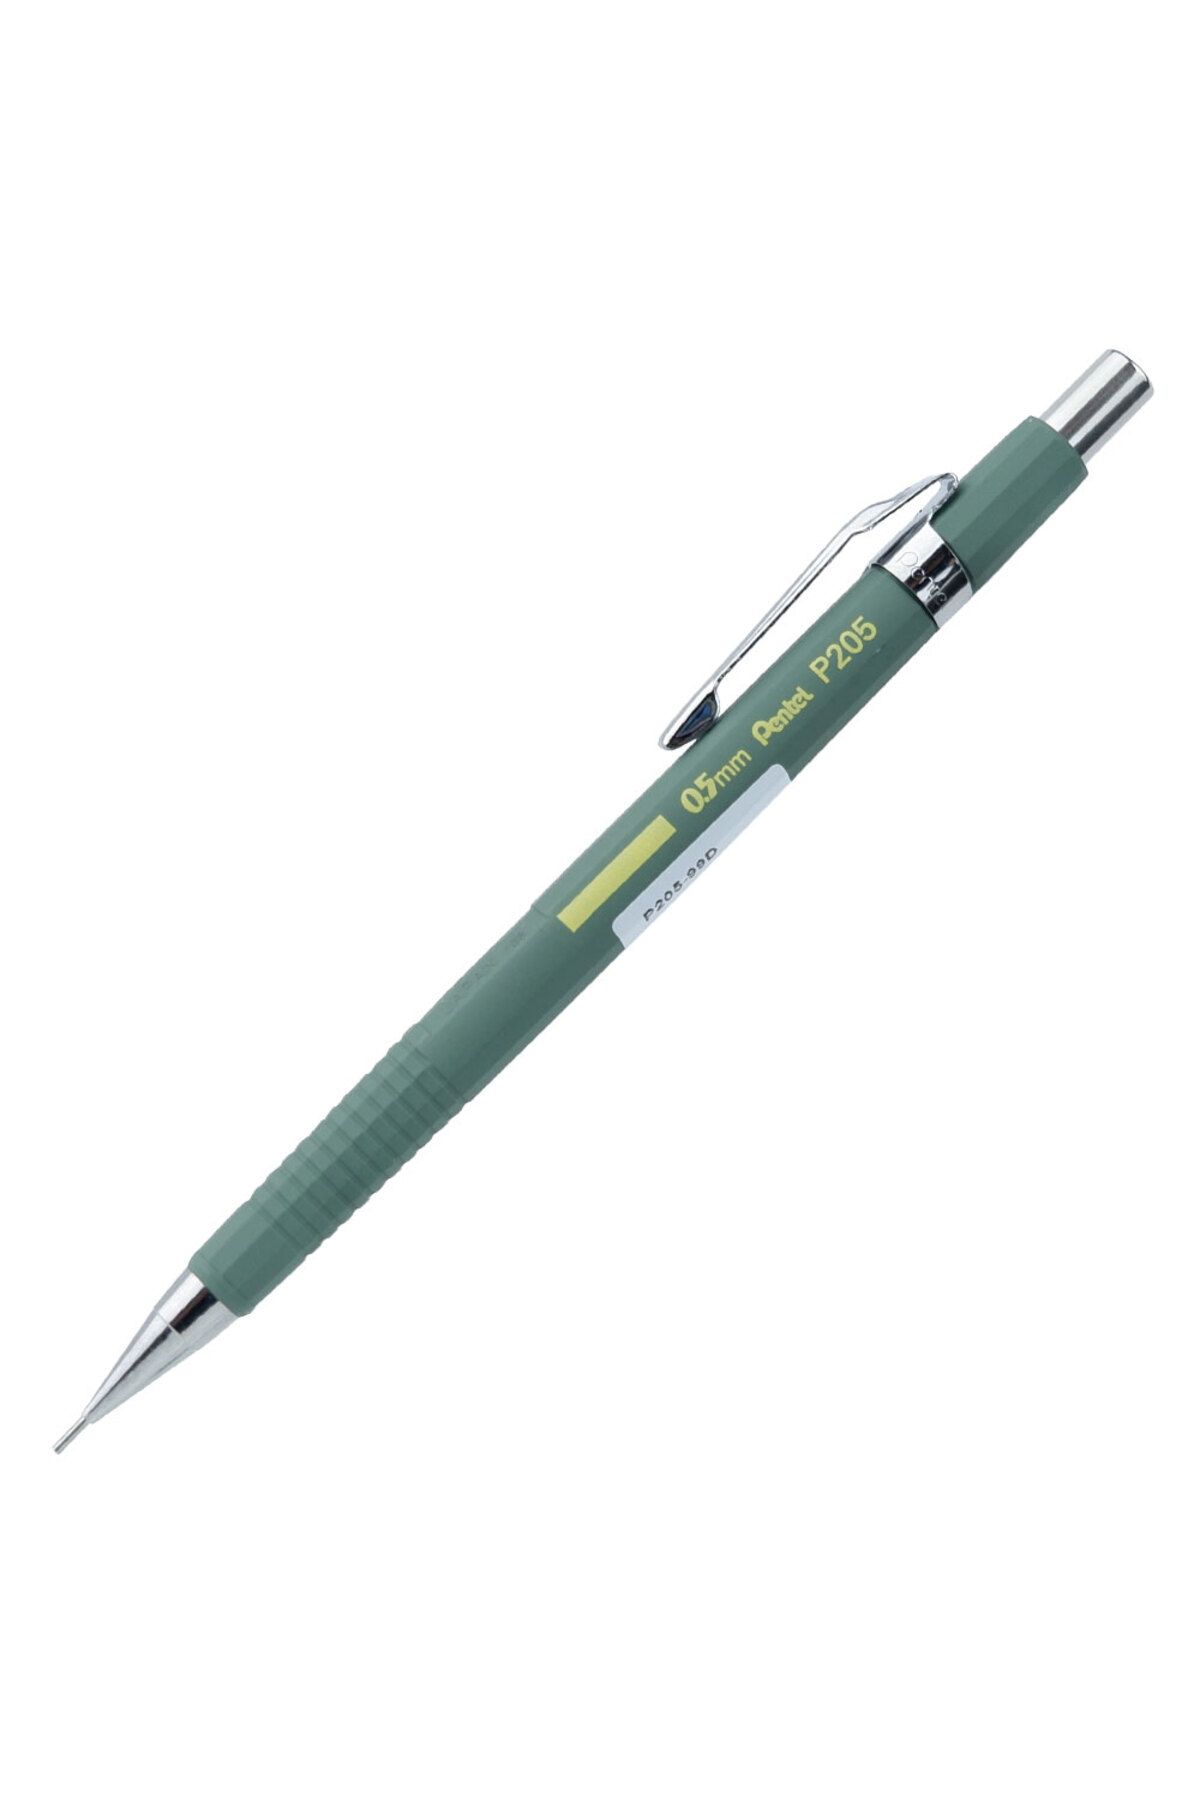 Pentel Sharp 2021 Koleksiyon P205 0.5mm Mekanik Kurşun Kalem - Haki Yeşil